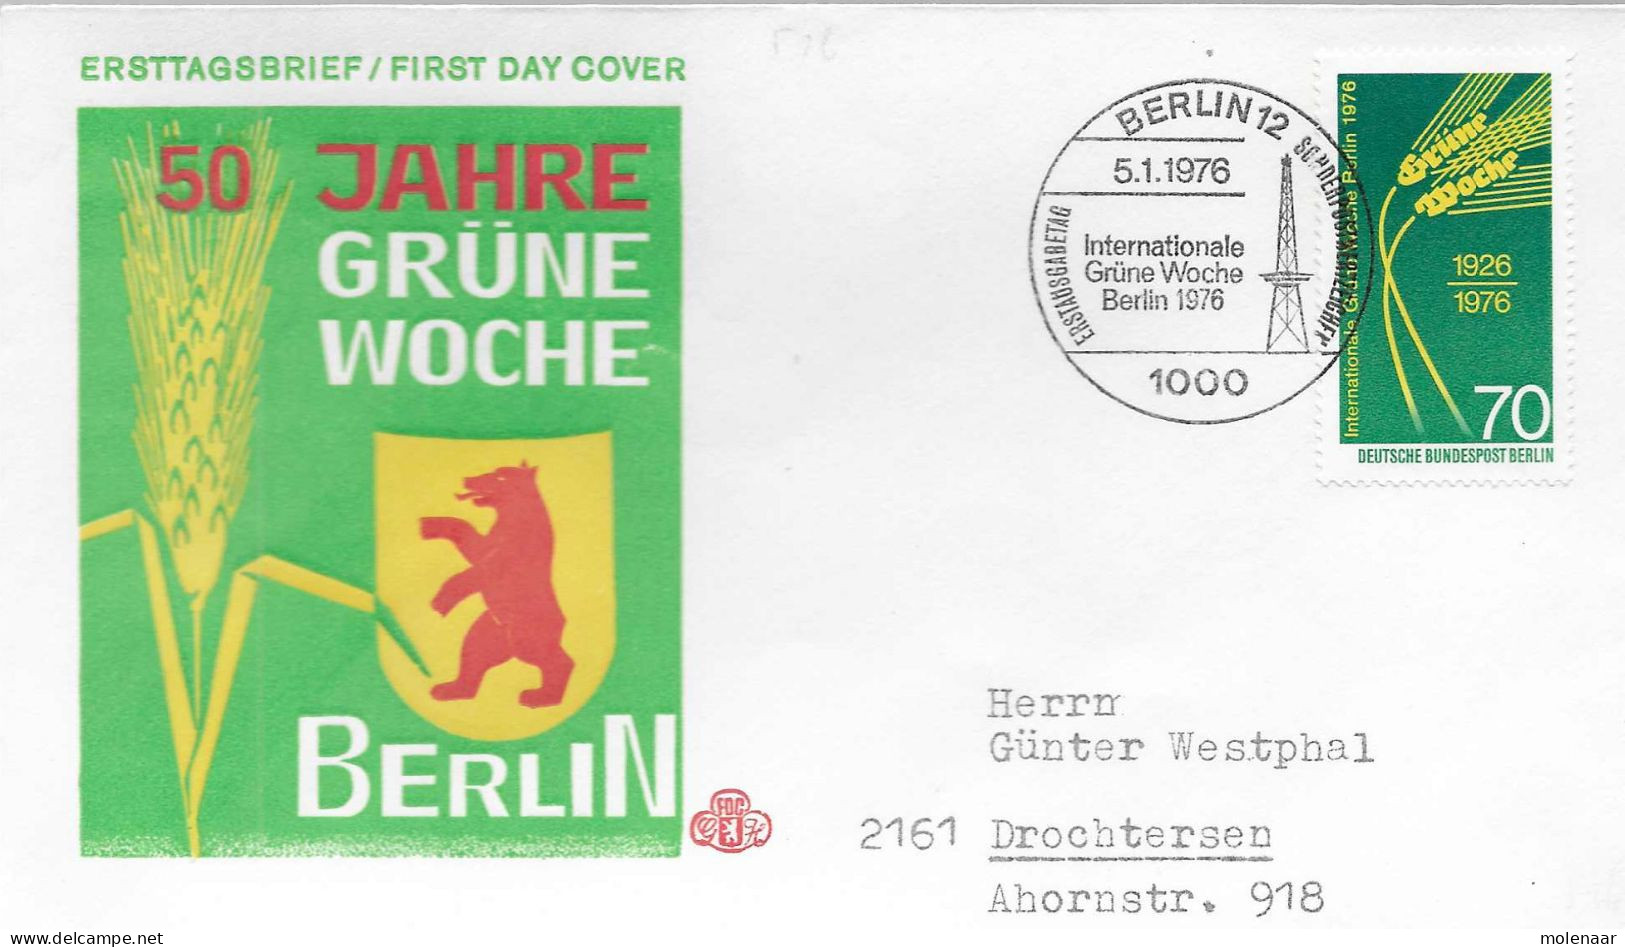 Postzegels > Europa > Duitsland > Berlijn > 1970-1979 > Brief Met 516 (17209) - Covers & Documents